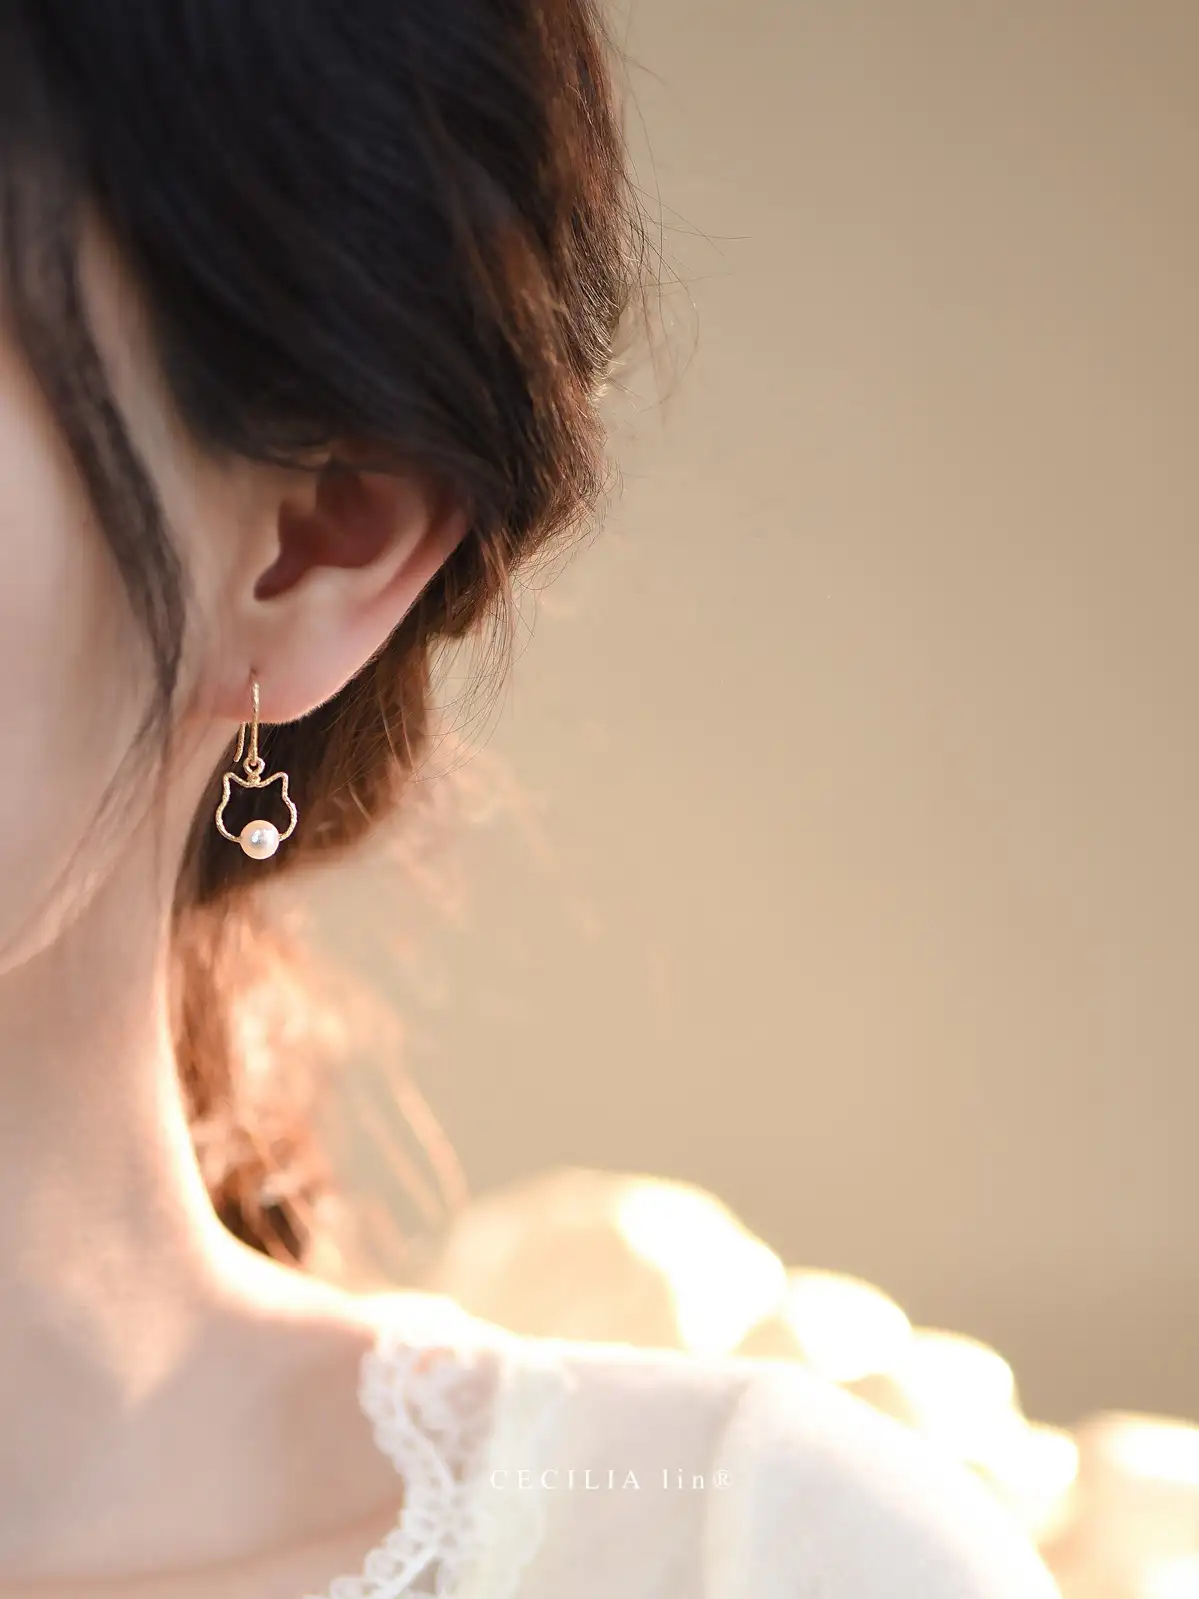 Cat pearl earrings French earrings without pierced ear clips